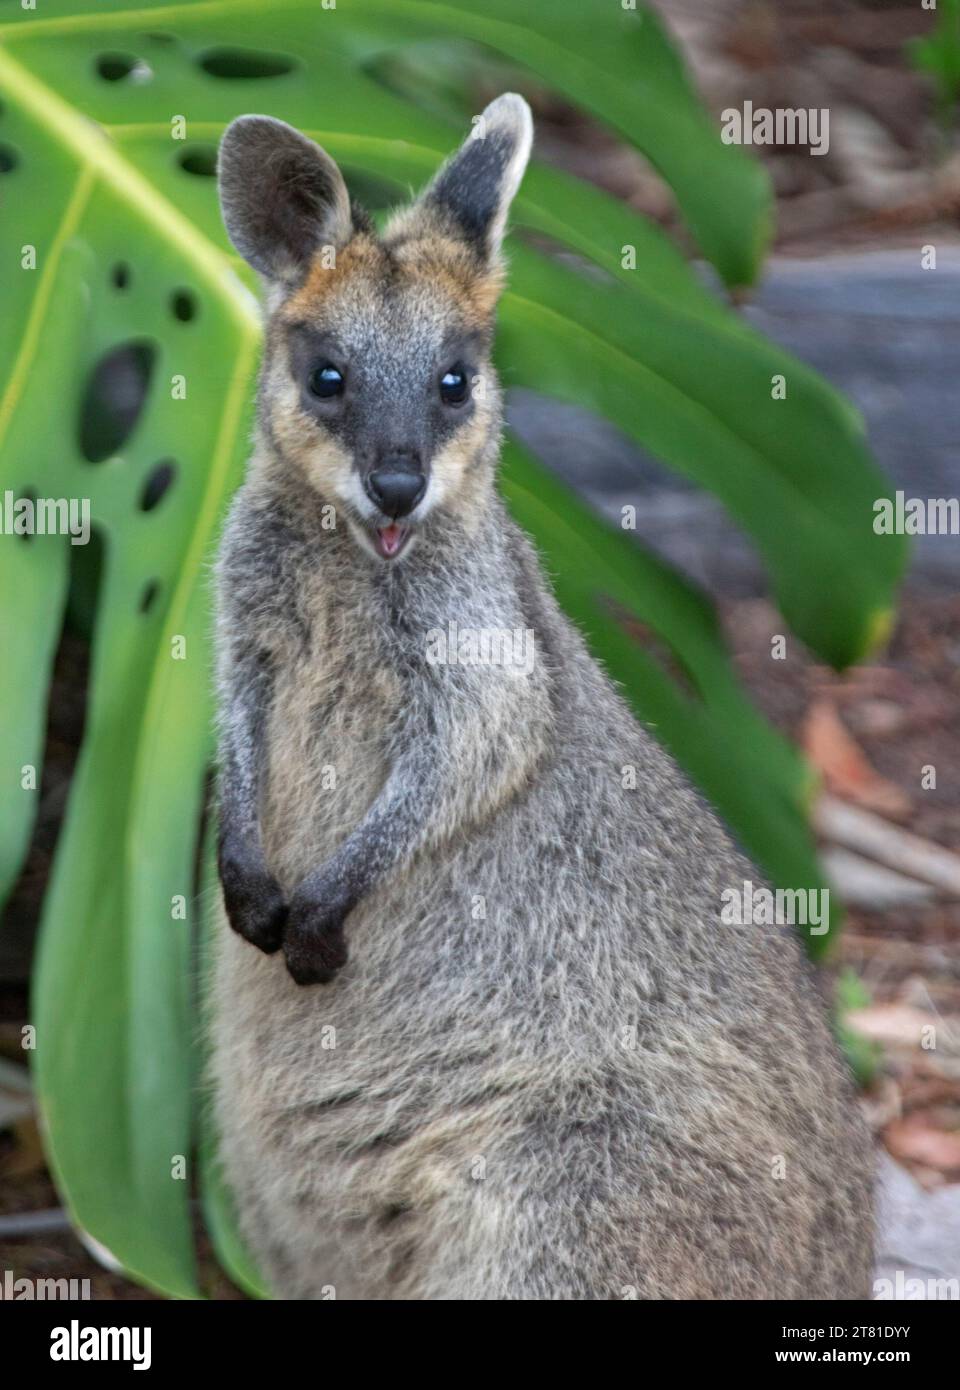 Wallaby paludoso, Wallabia bicolor, un selvaggio marsupiale australiano in un giardino rurale, che guarda direttamente alla macchina fotografica, Foto Stock